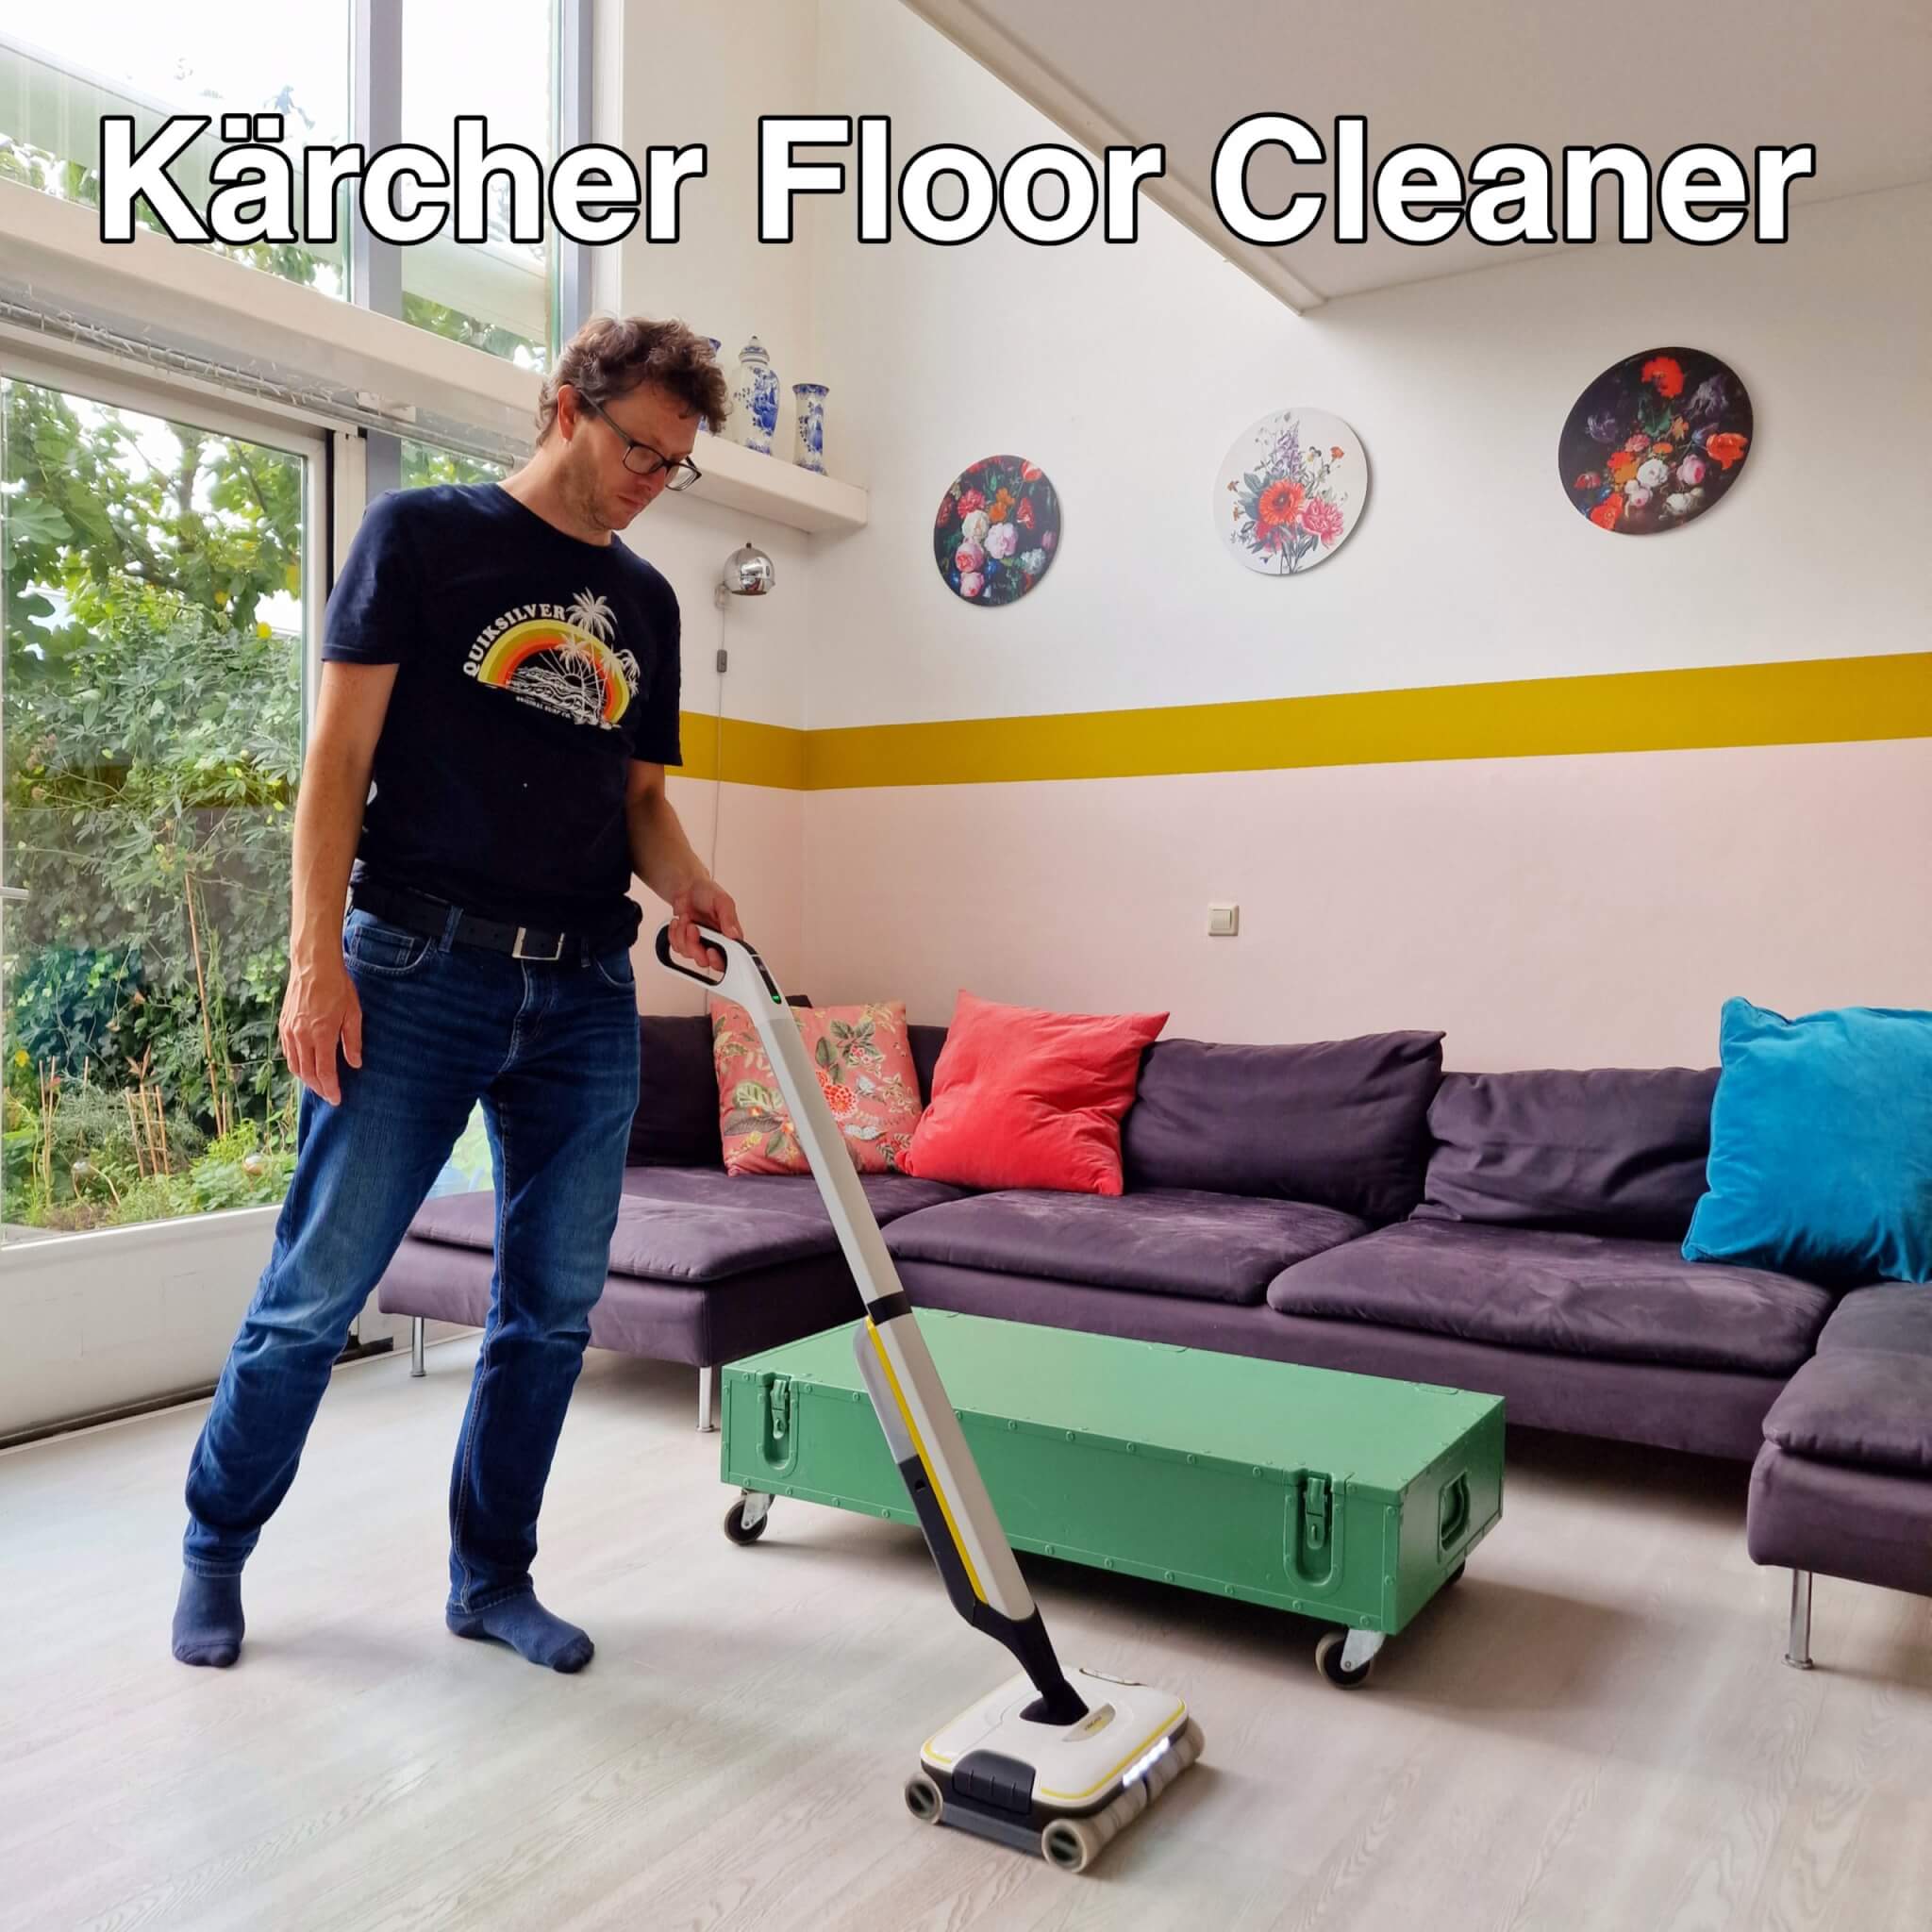 Kärcher Floor Cleaner: vloer met één apparaat Leuk met kids